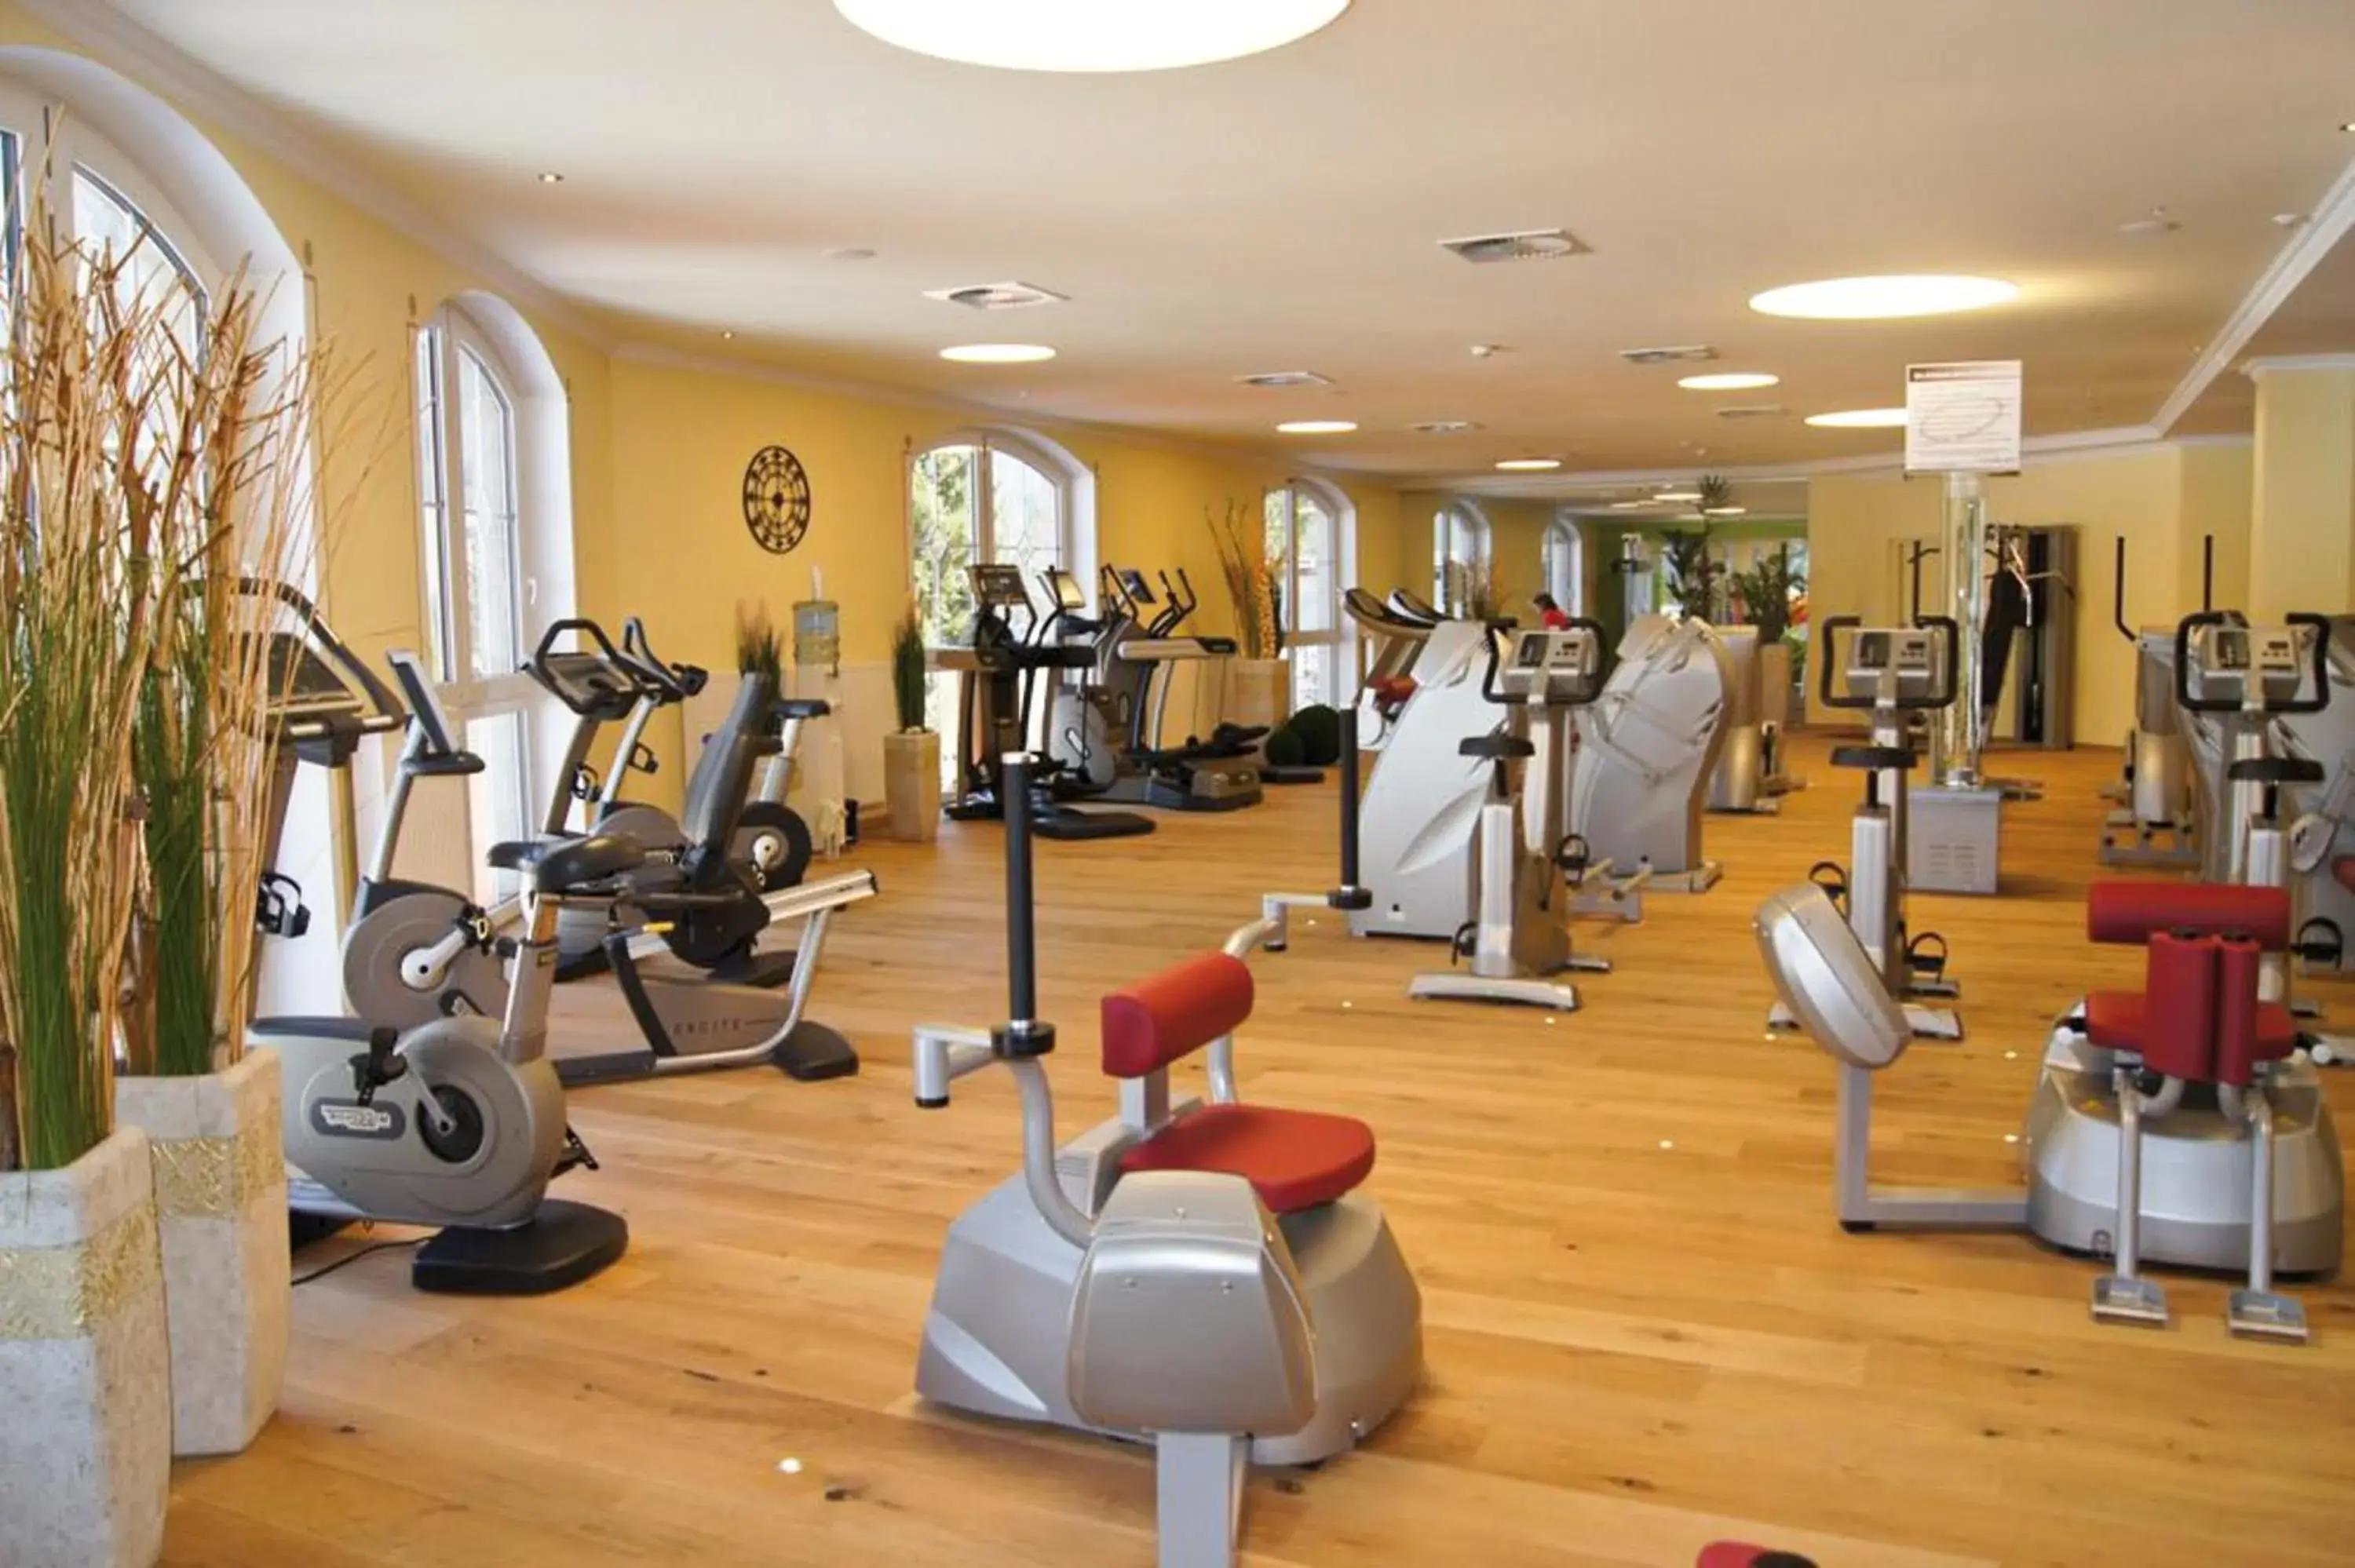 Fitness centre/facilities, Fitness Center/Facilities in Der Lärchenhof